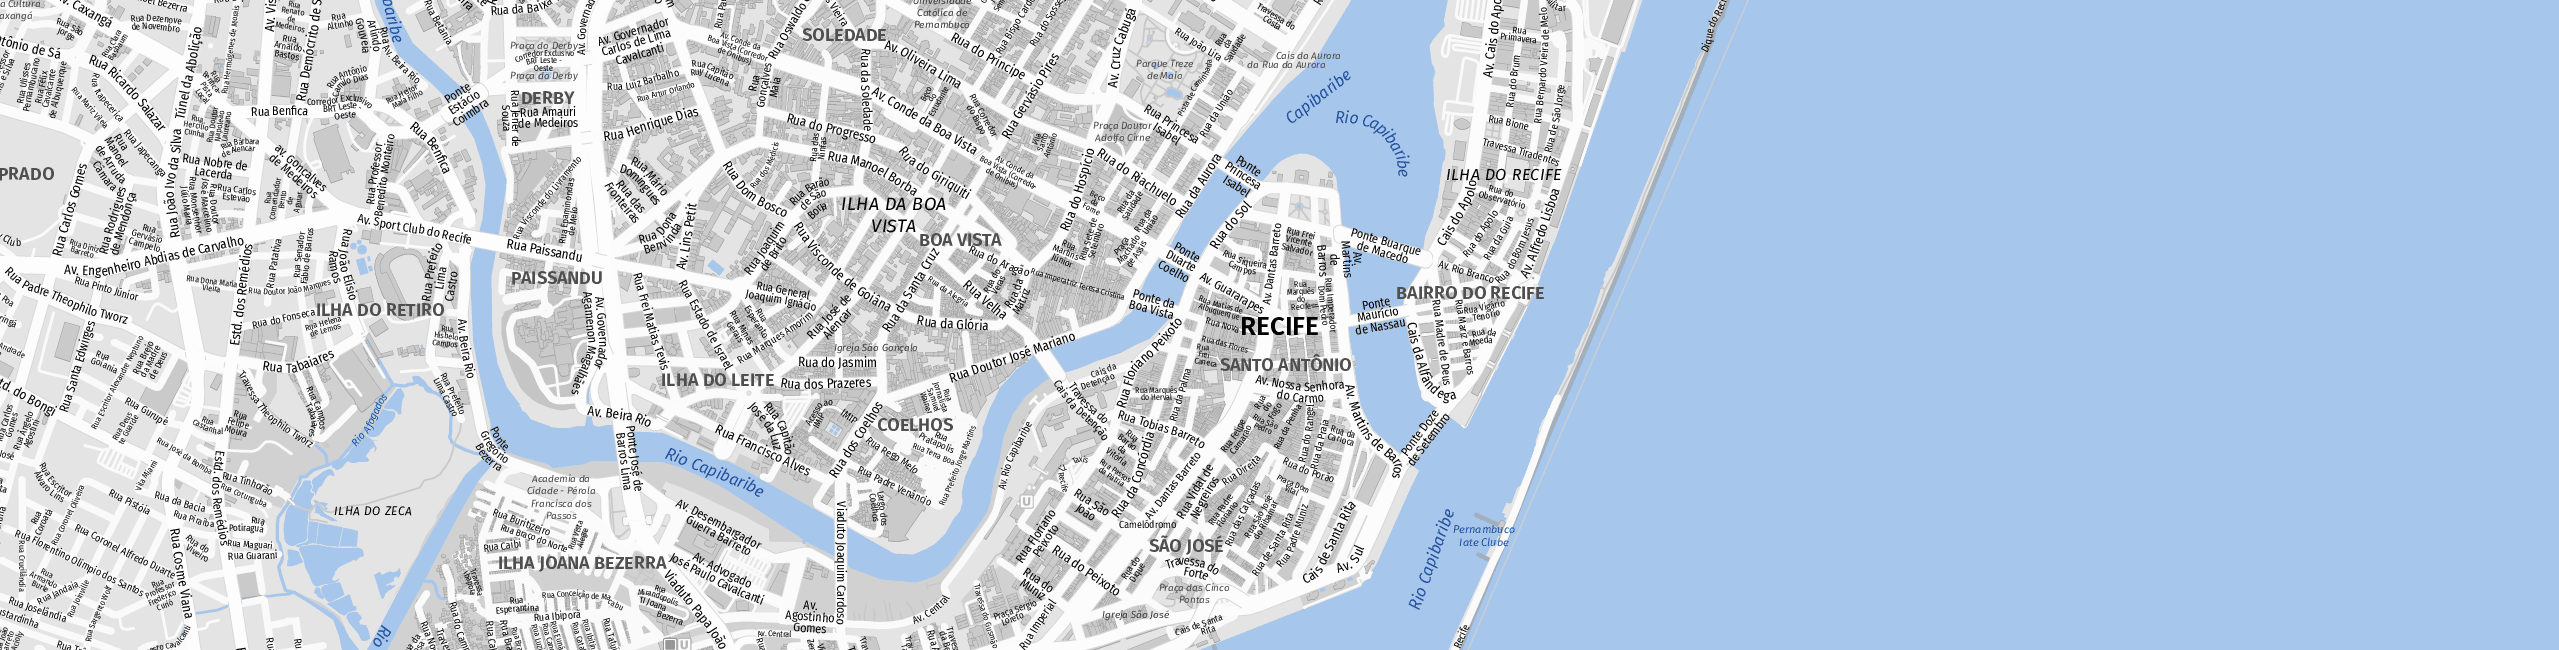 Stadtplan Recife zum Downloaden.